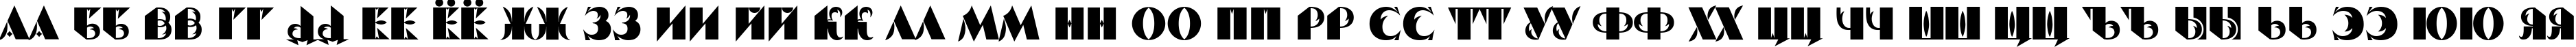 Пример написания русского алфавита шрифтом Serp And Molot